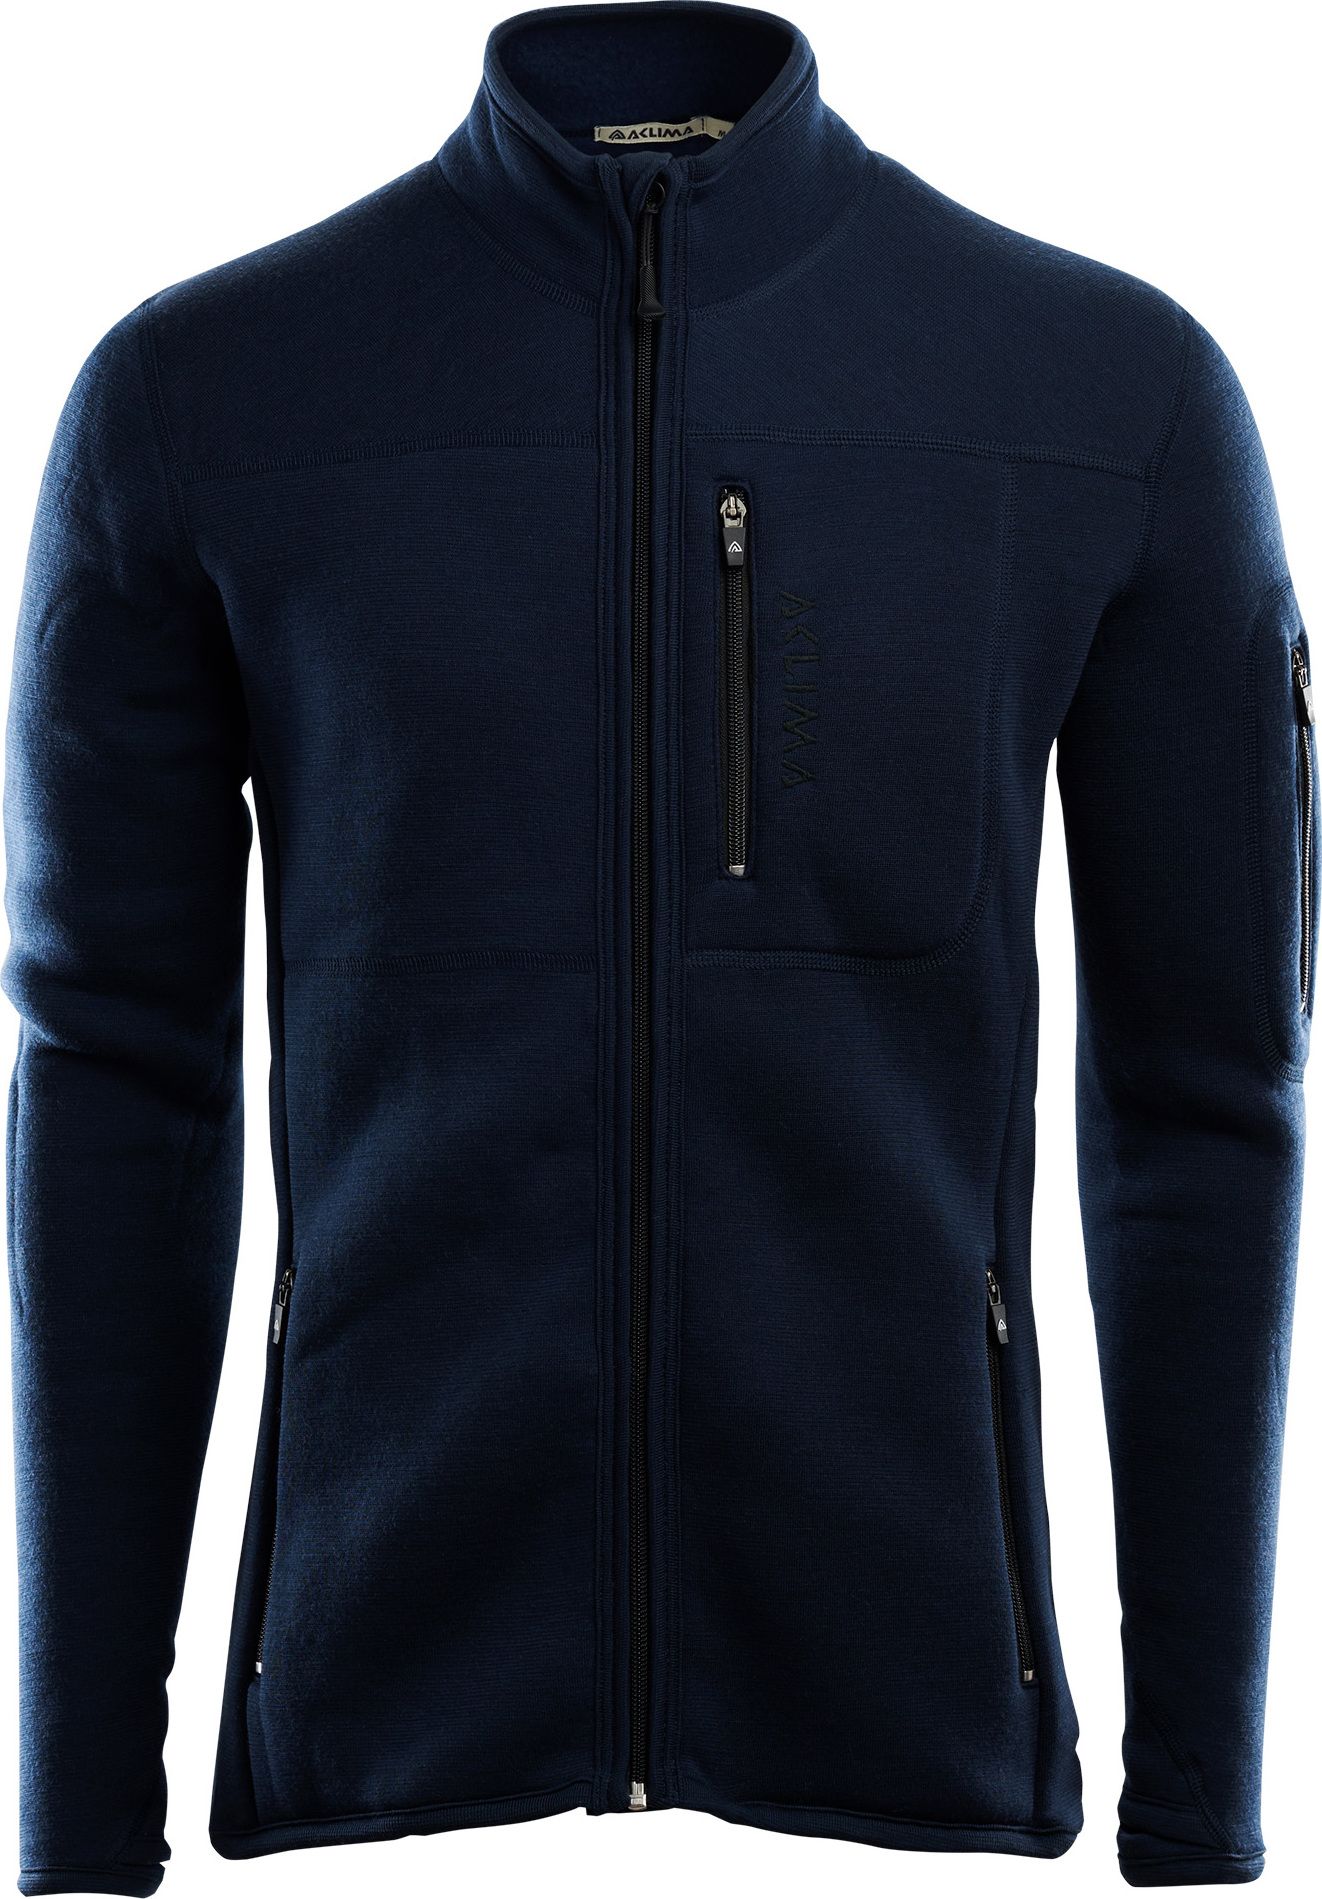 Men's FleeceWool Jacket Navy Blazer